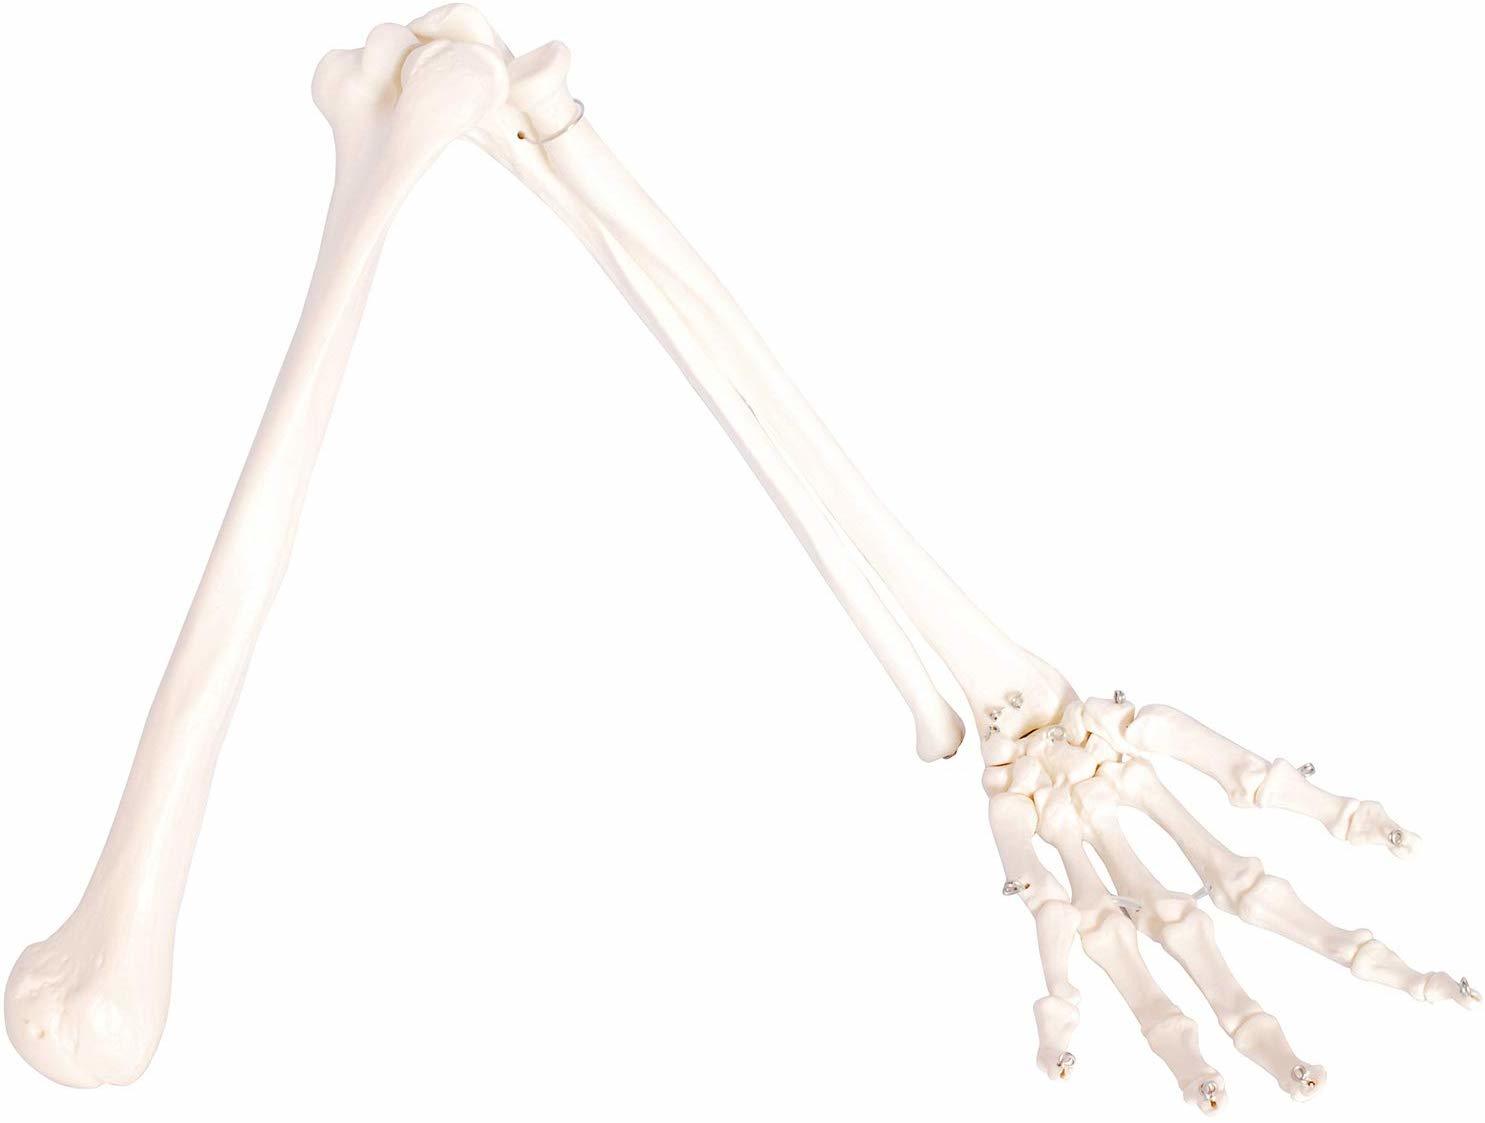 実物大の左手骨模型 人体模型 上肢骨 上腕骨 前腕 当店限定販売 手首 手骨 等身大 63%OFF ワイヤーつなぎ 模型 73cm モデル 左手